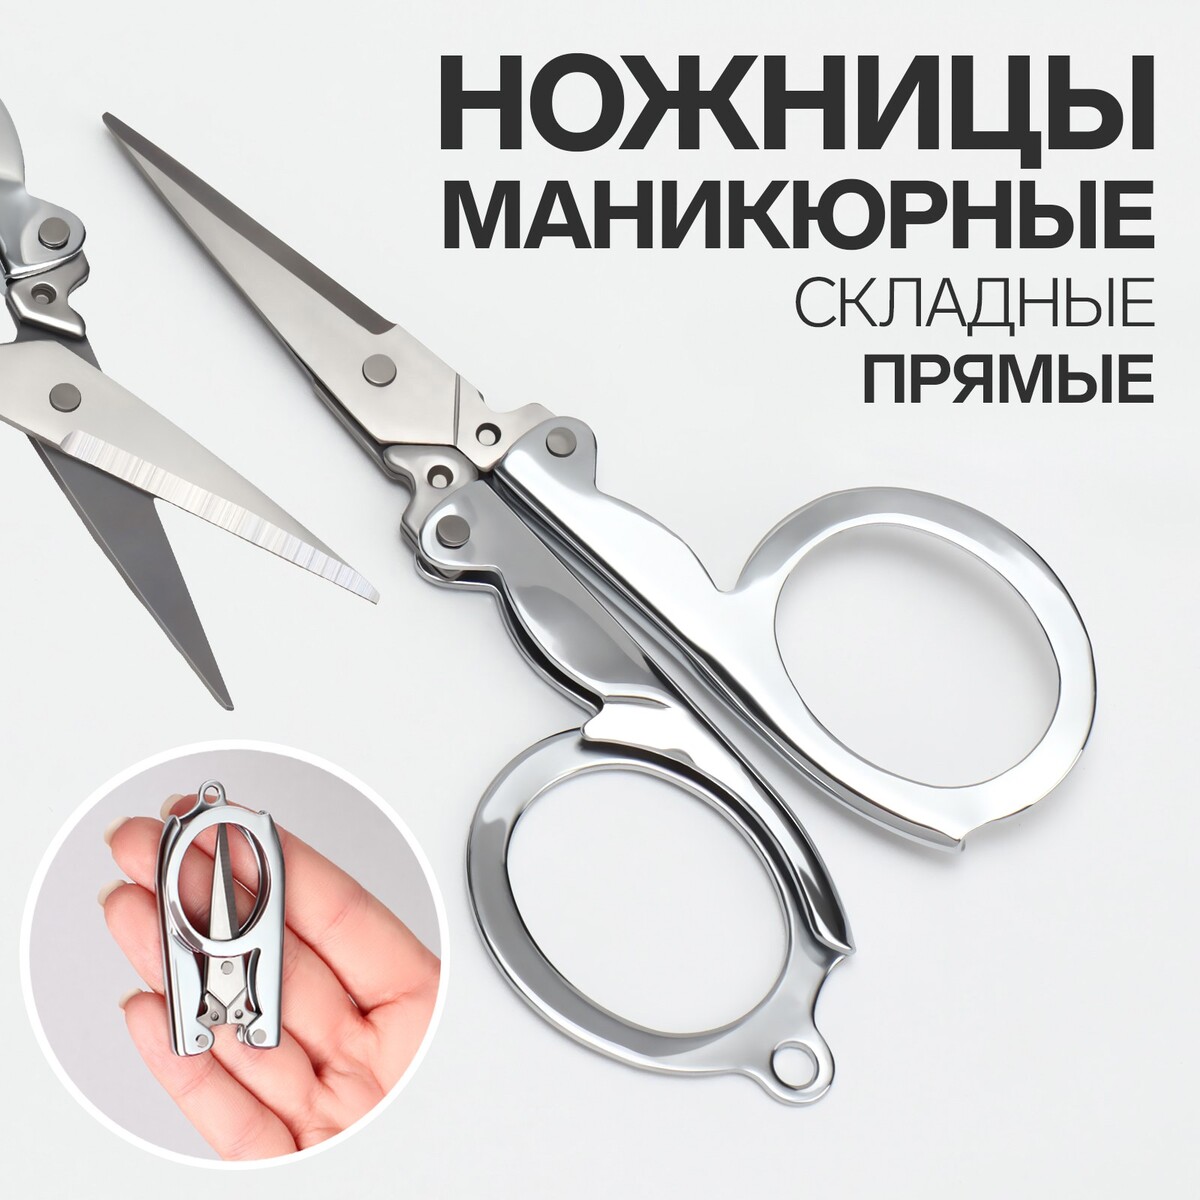 Ножницы маникюрные, складные, прямые, 10,5 см, цвет серебристый ножницы маникюрные прямые узкие 9 см серебристый